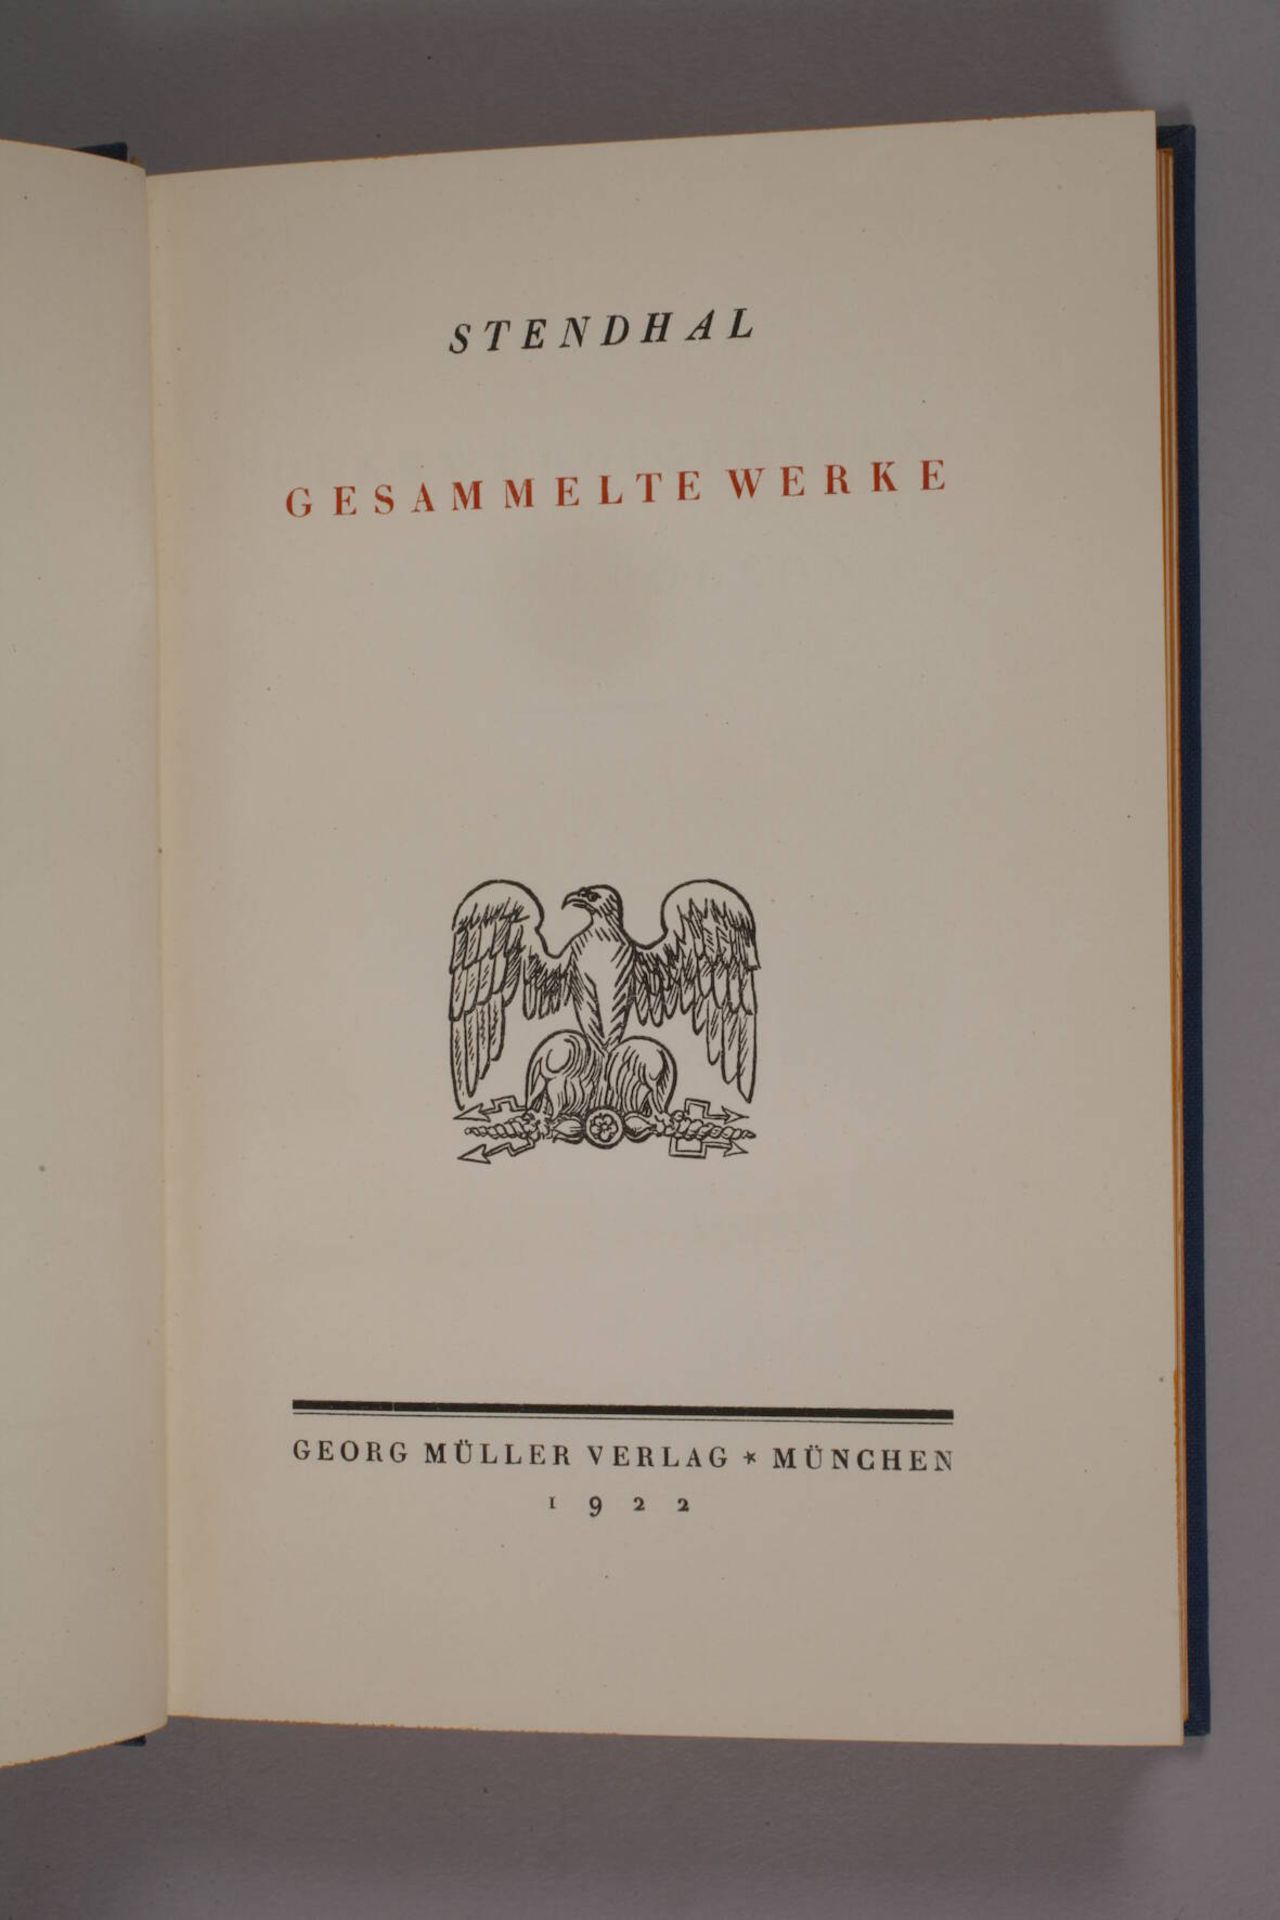 Zwölf Bände Stendhal - Image 2 of 3